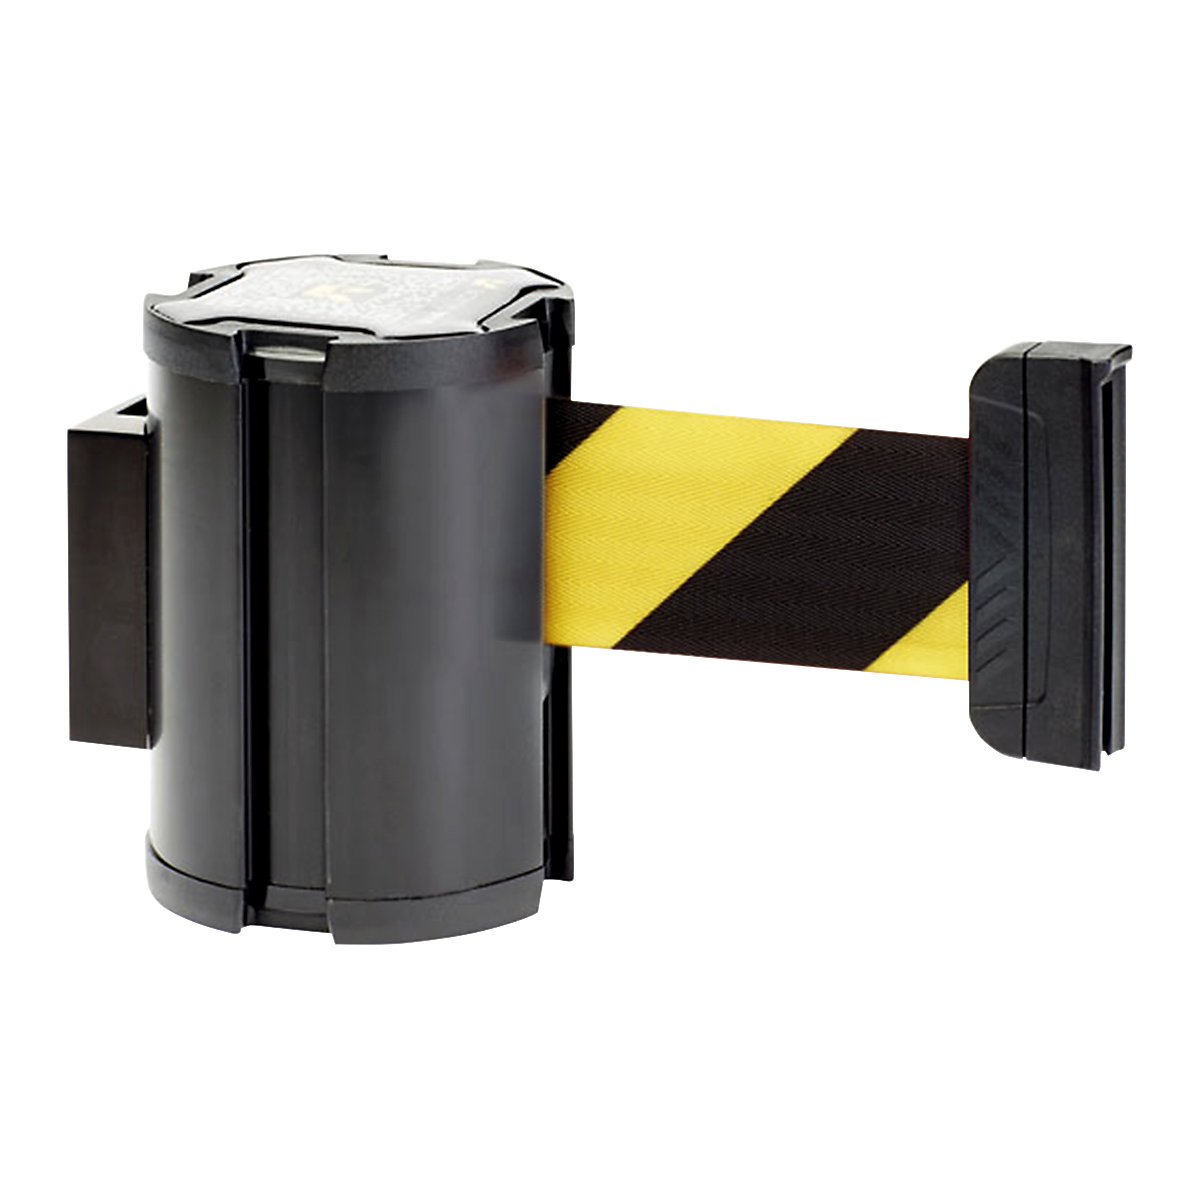 Bandcassette, uittreklengte max. 3000 mm, cassette zwart, band geel / zwart